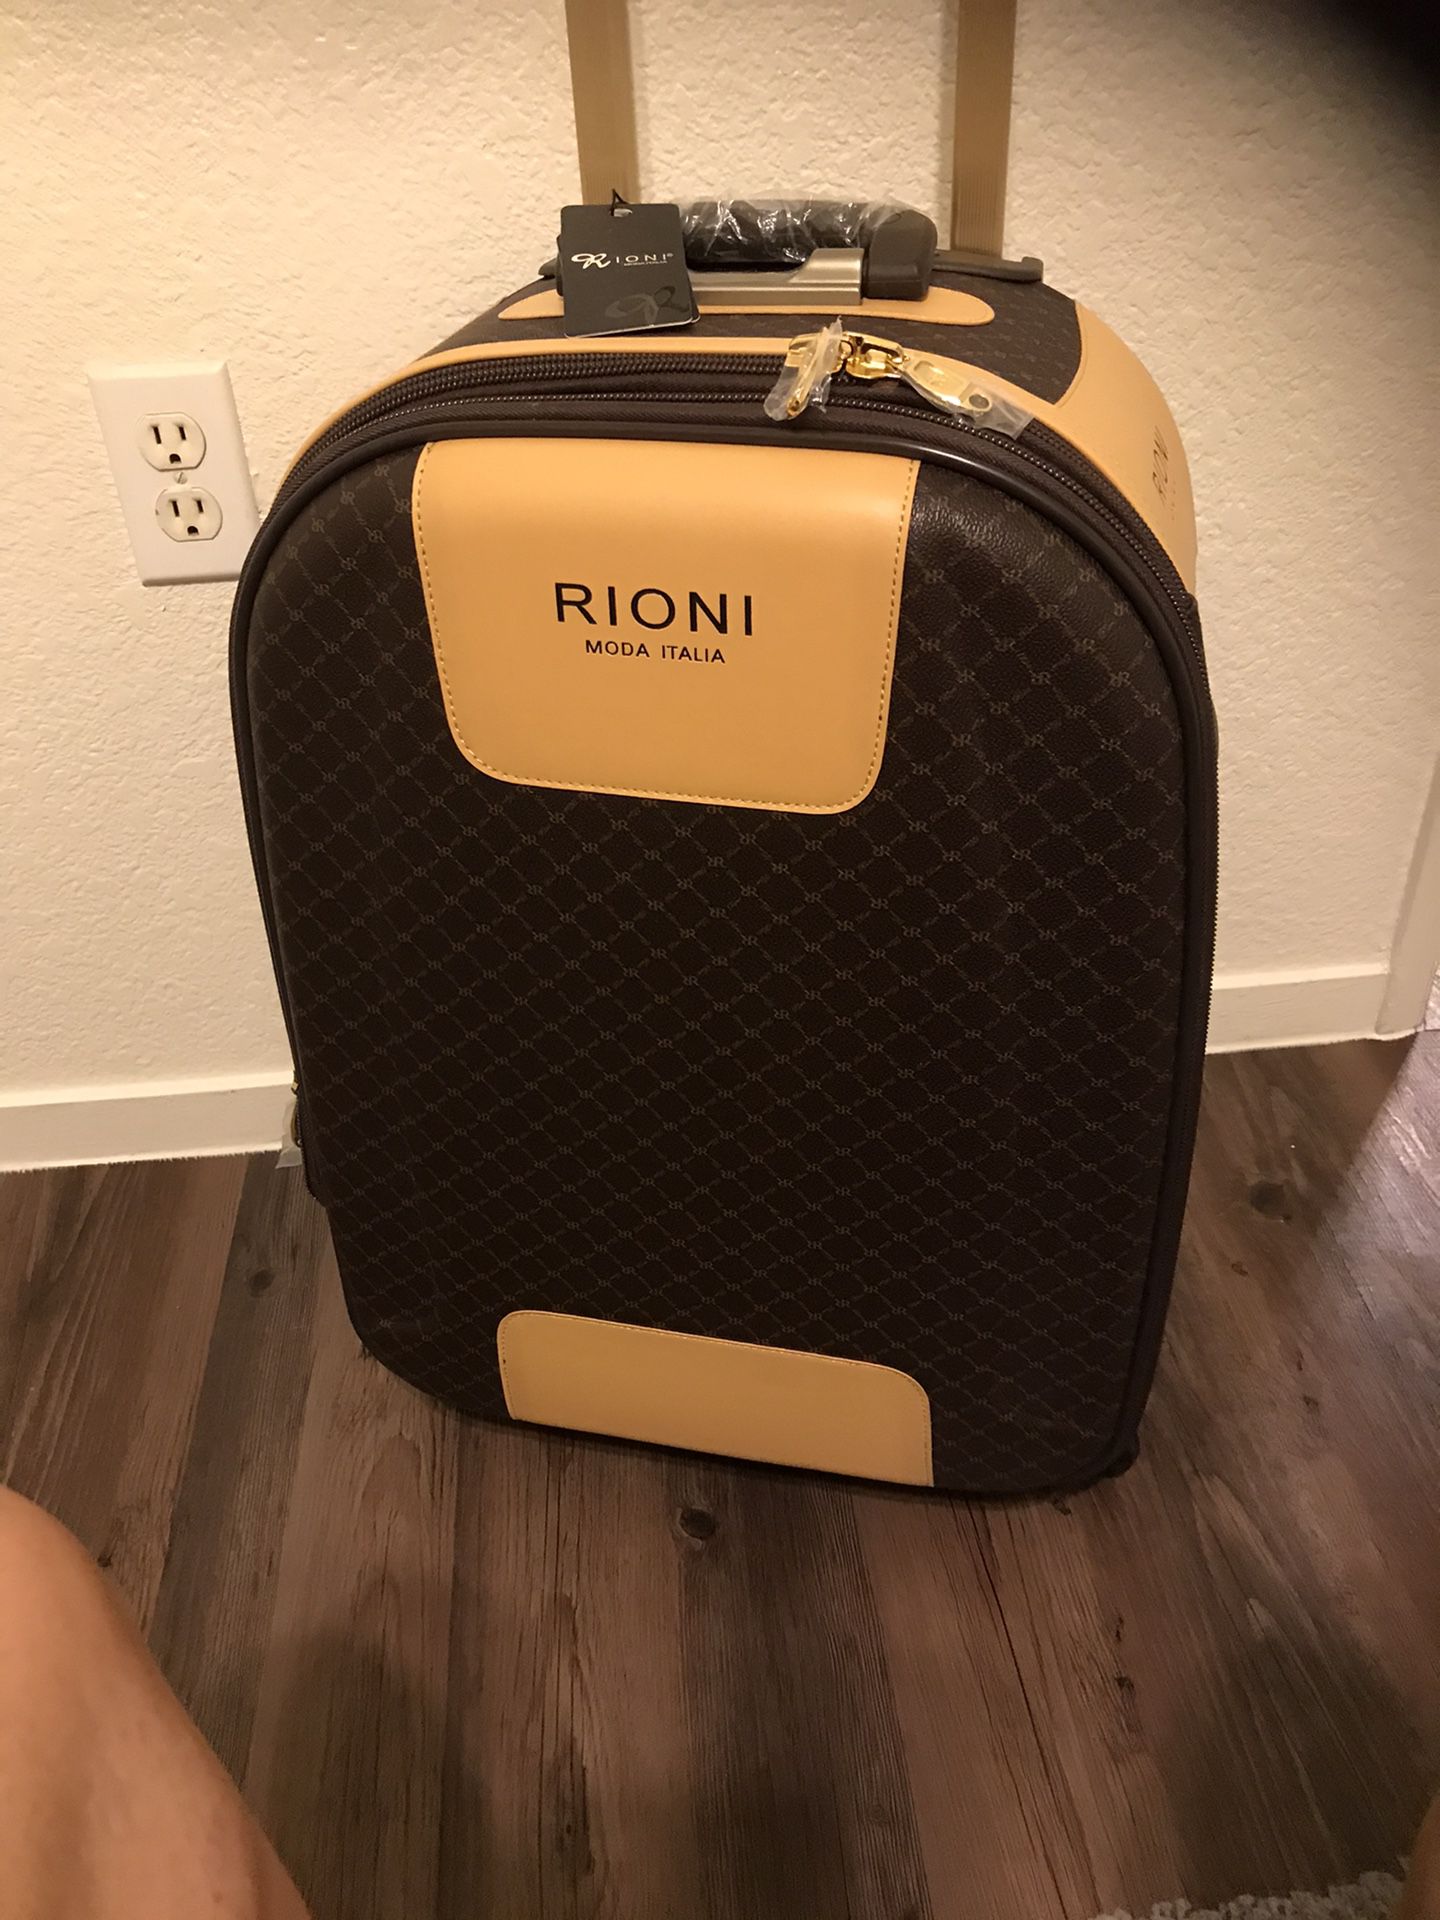 Rioni Italian Luggage